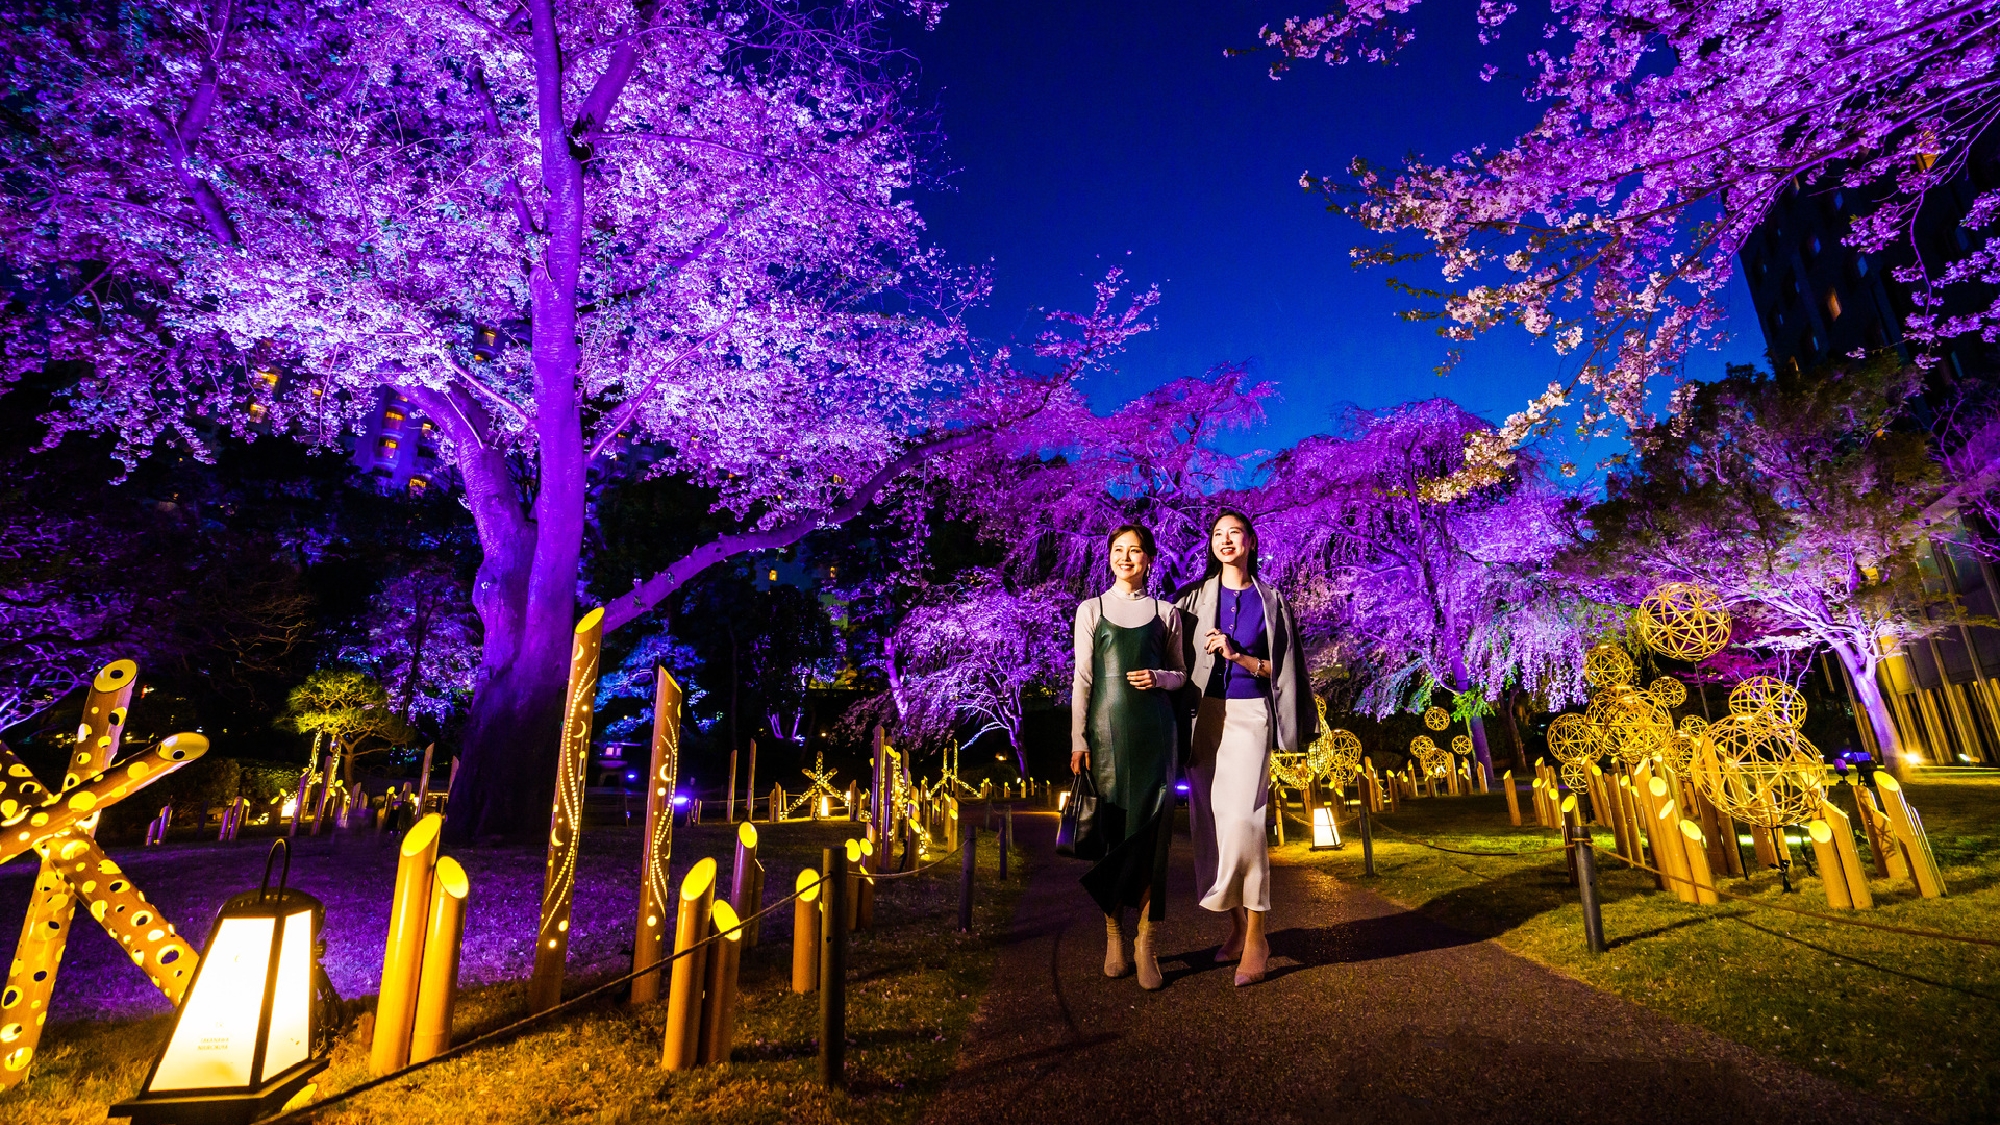 「竹あかり」のライトアップに包まれた日本庭園の散策がおすすめ（画像は桜の時期です）